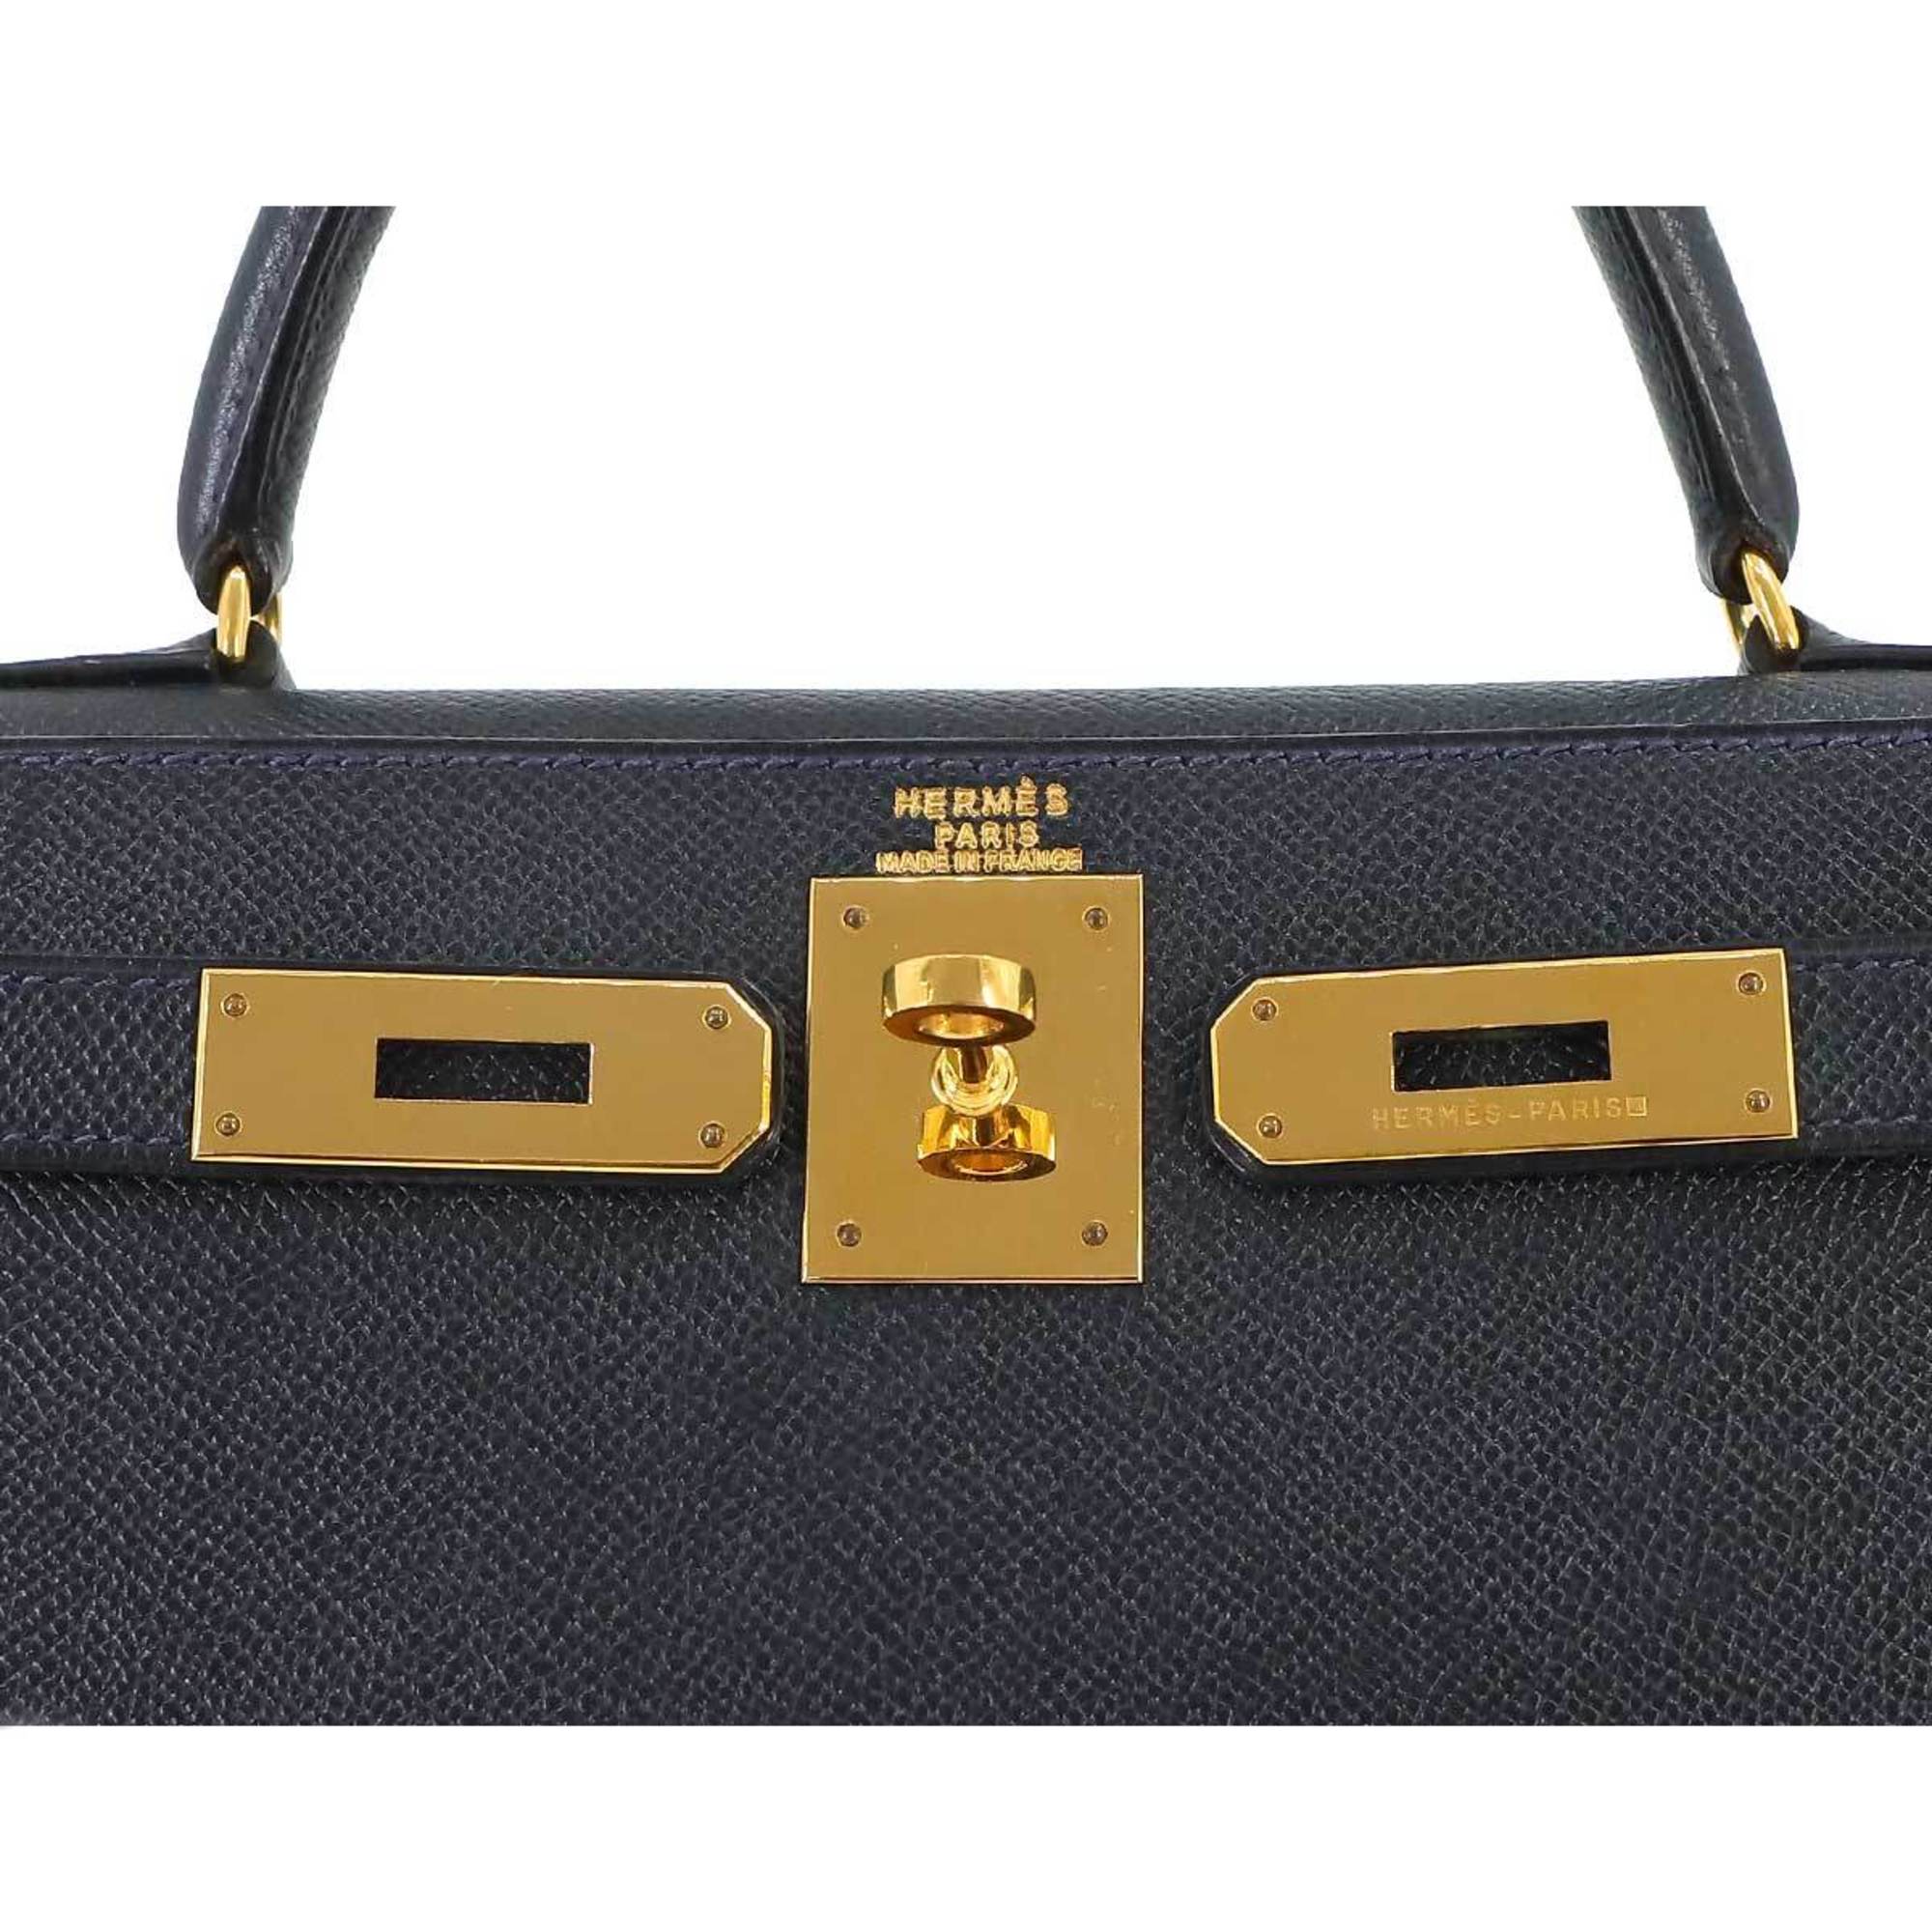 Hermes Kelly 28 2way hand shoulder bag, Cushvel Epsom, navy, 〇U engraved, outer stitching, gold hardware,